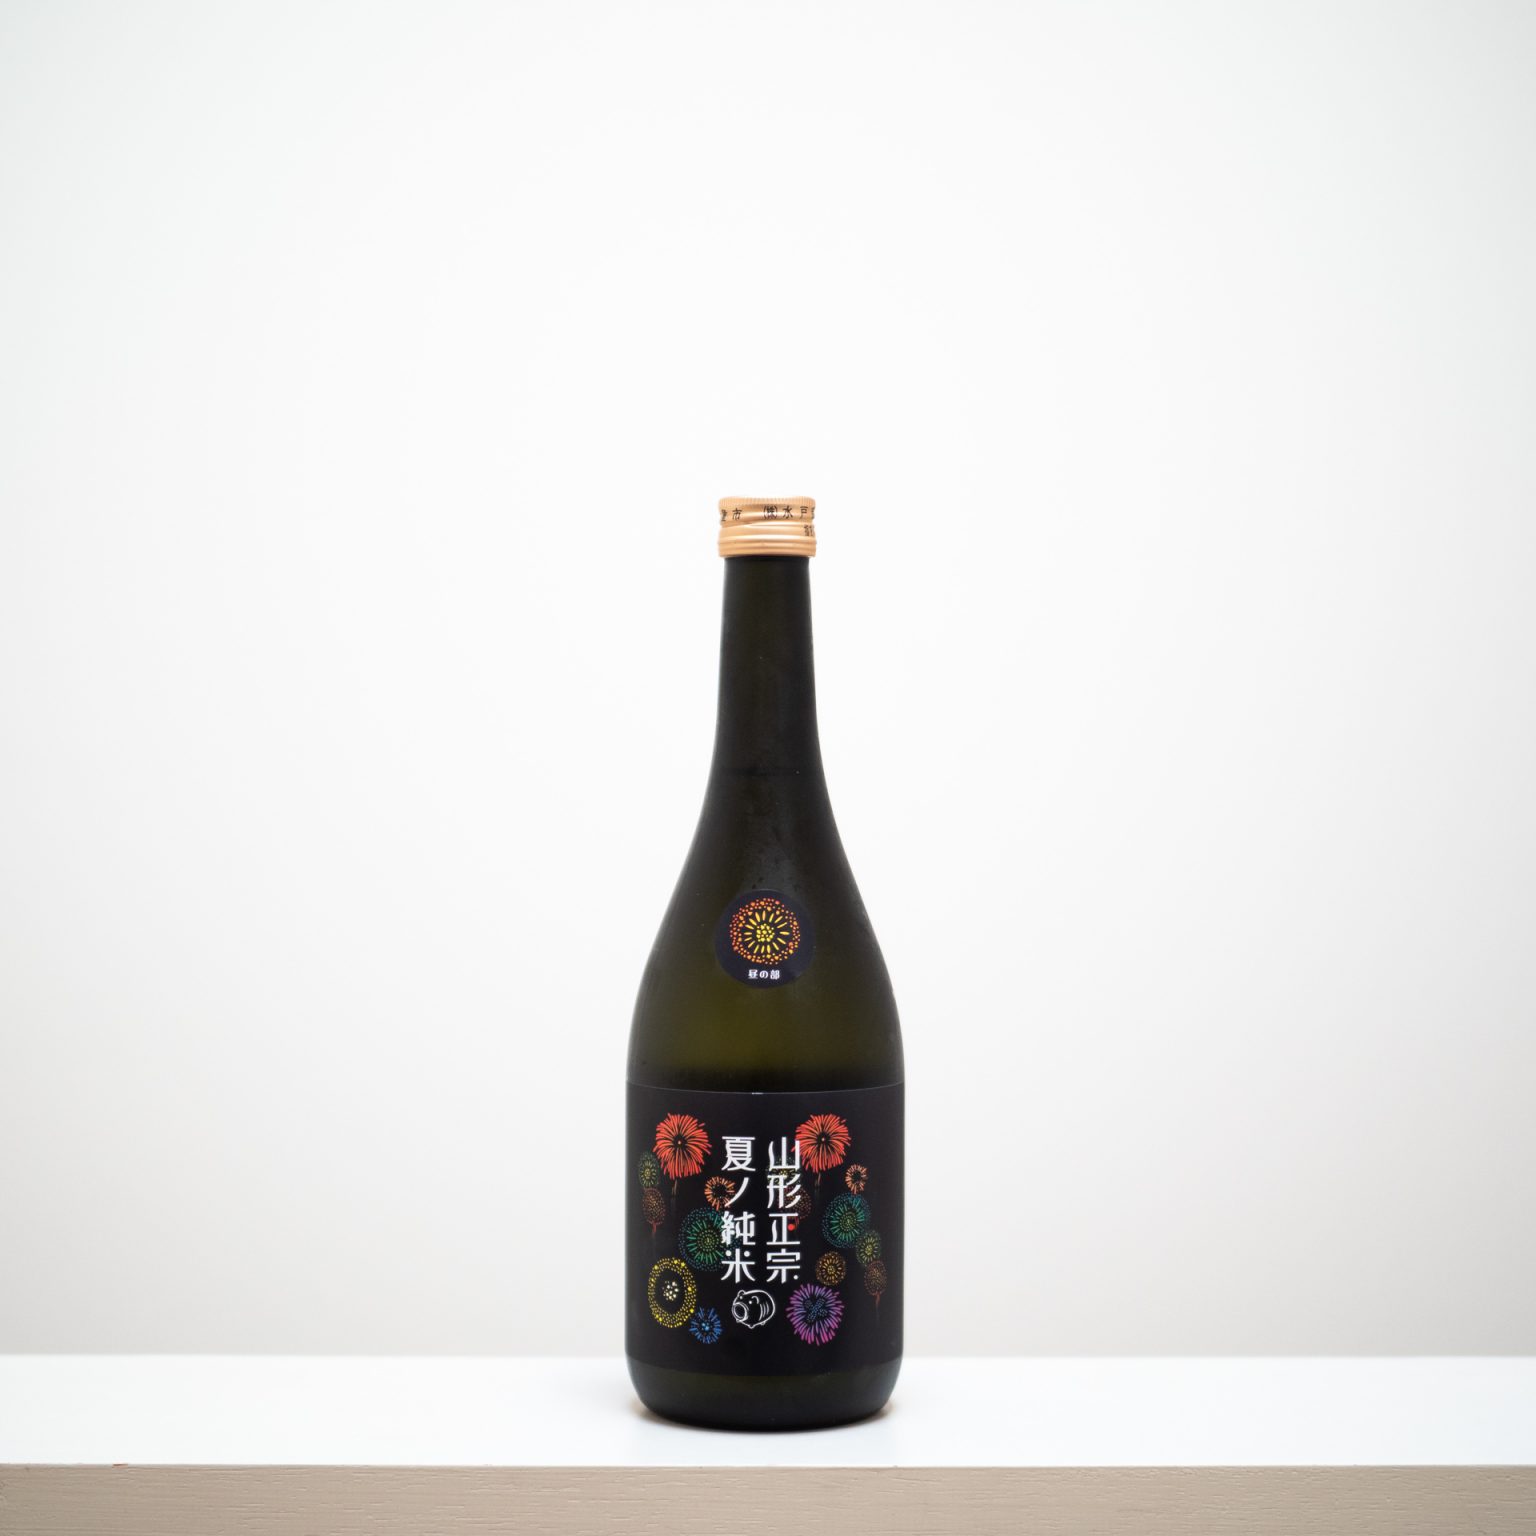 山形県天童市の水戸部酒造の代表銘柄「山形正宗」の夏季限定酒がこちら。花火のラベルがなんとも夏らしい。